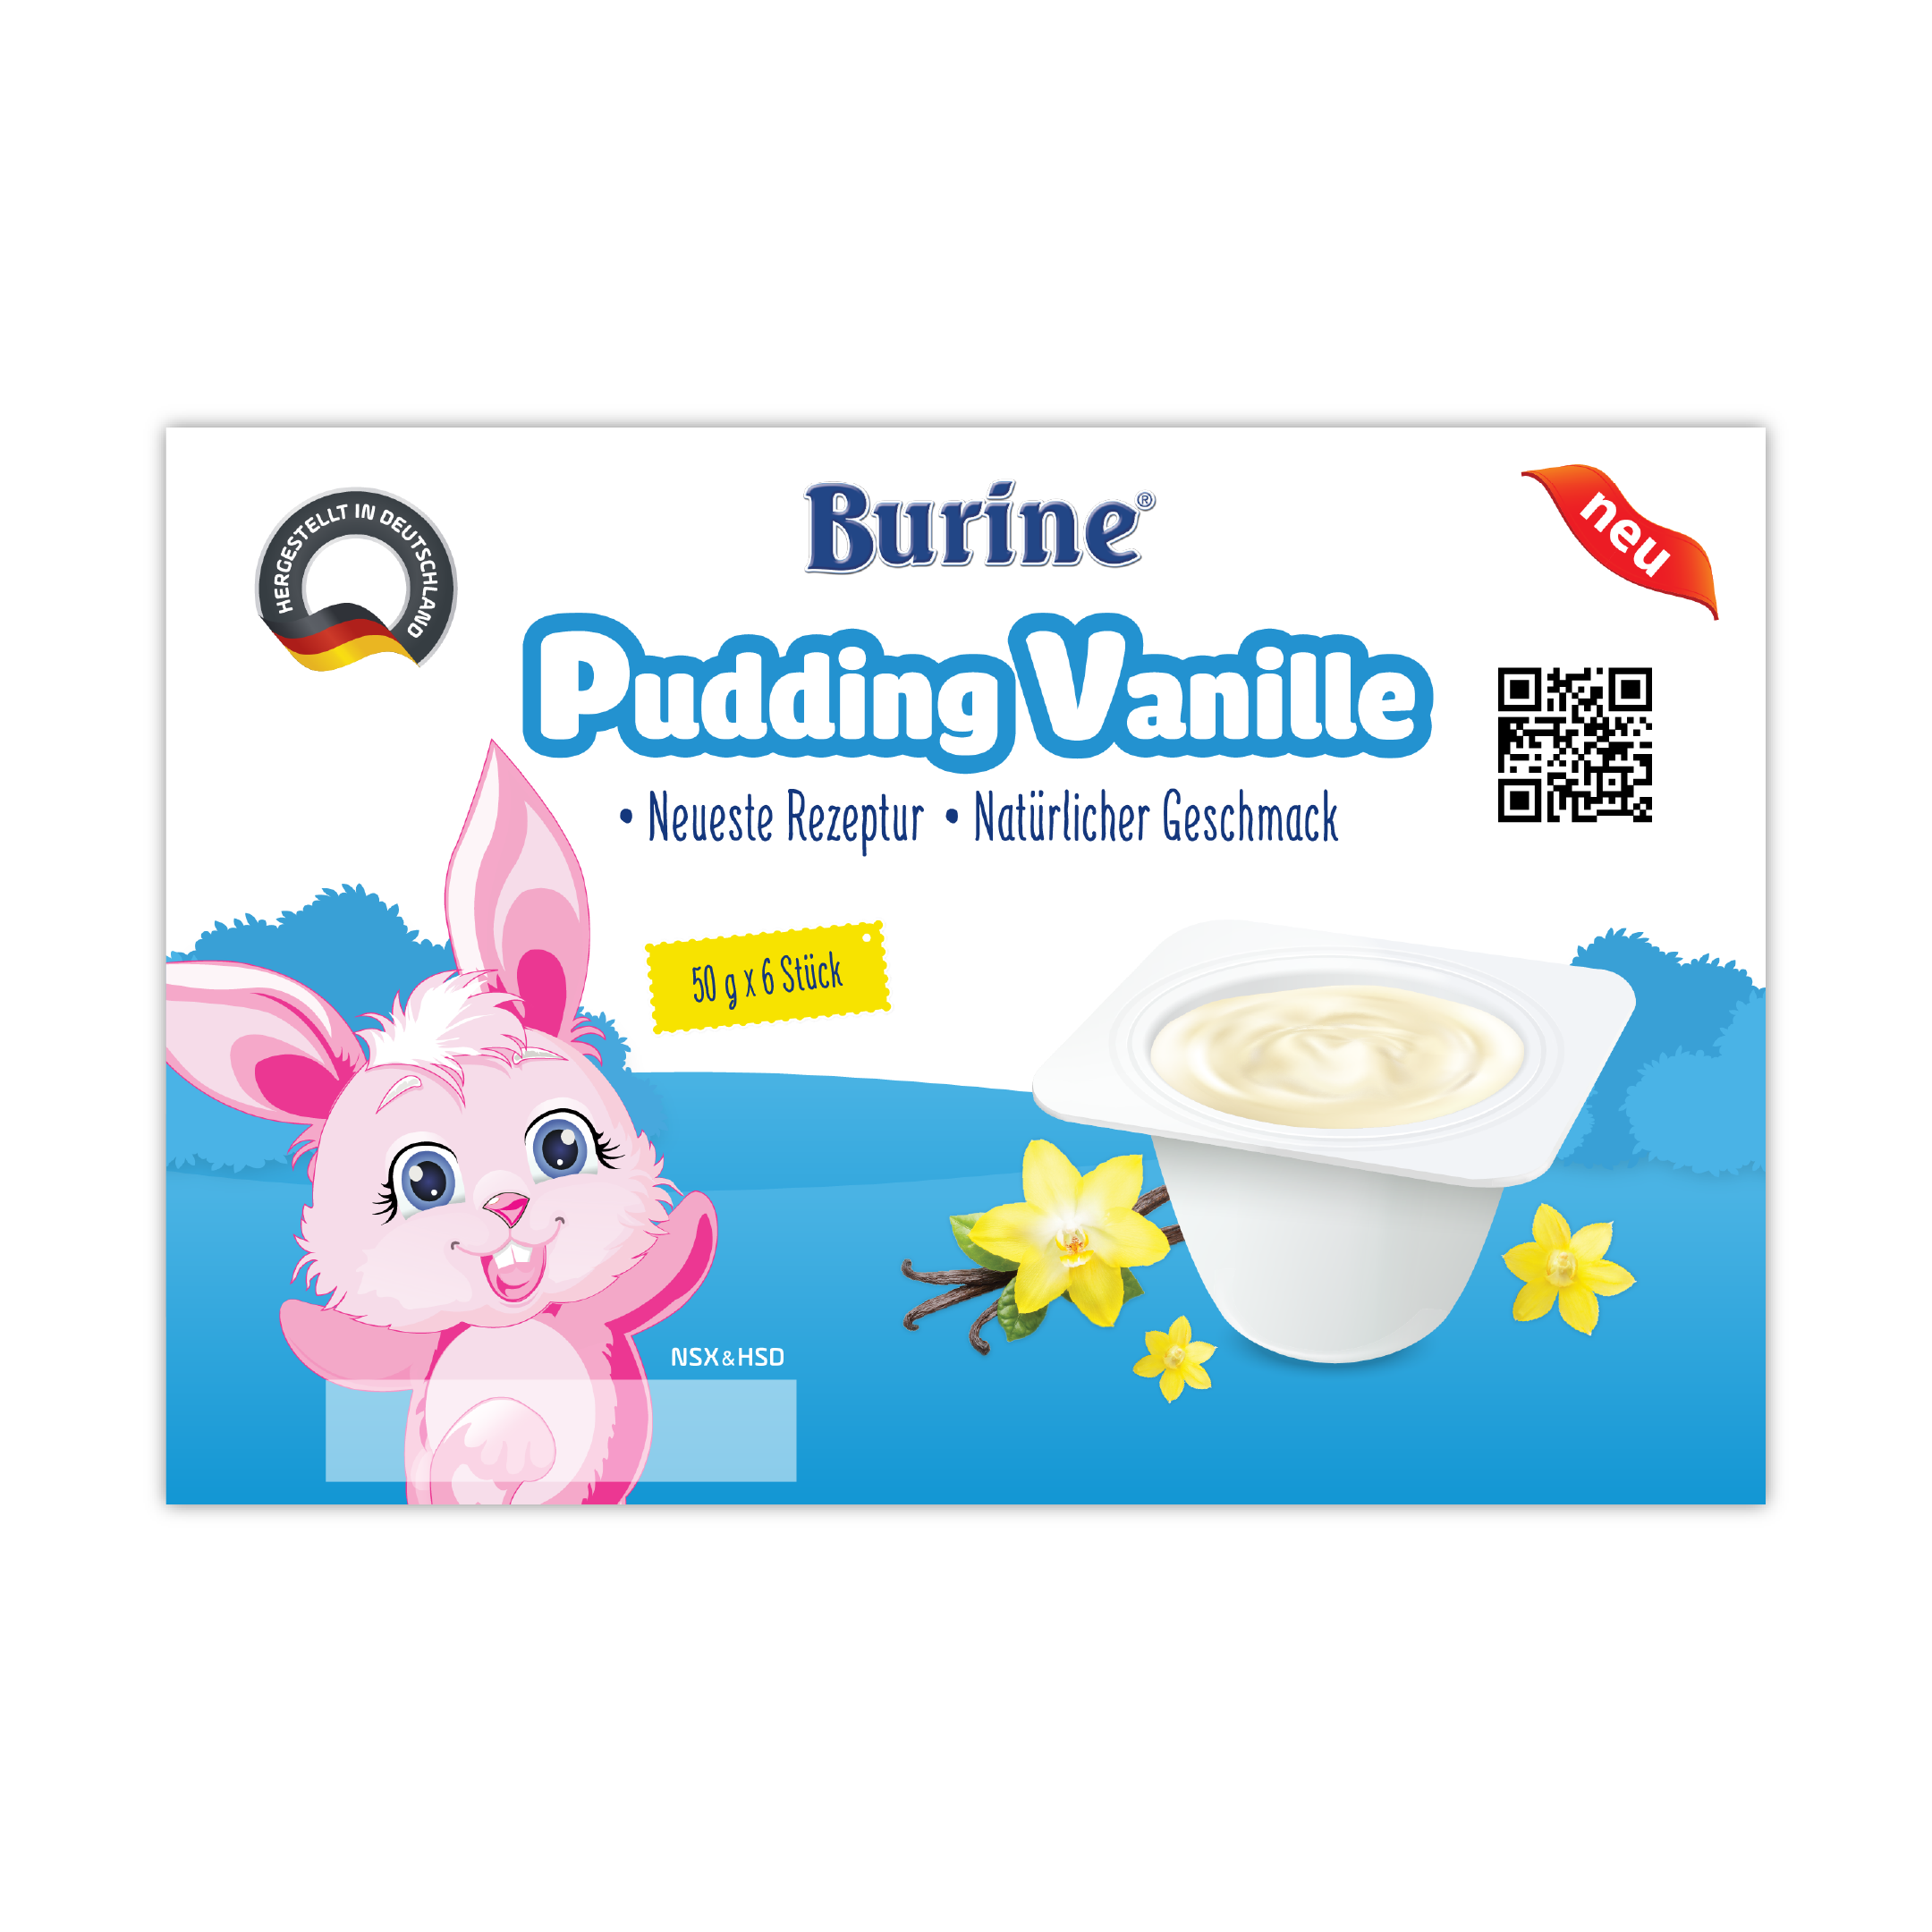 [quà tặng hot] pudding ăn dặm burine dành cho bé từ 6 tháng tuổi - nhập khẩu 100% từ đức - lốc 6 hũ x 50g 8